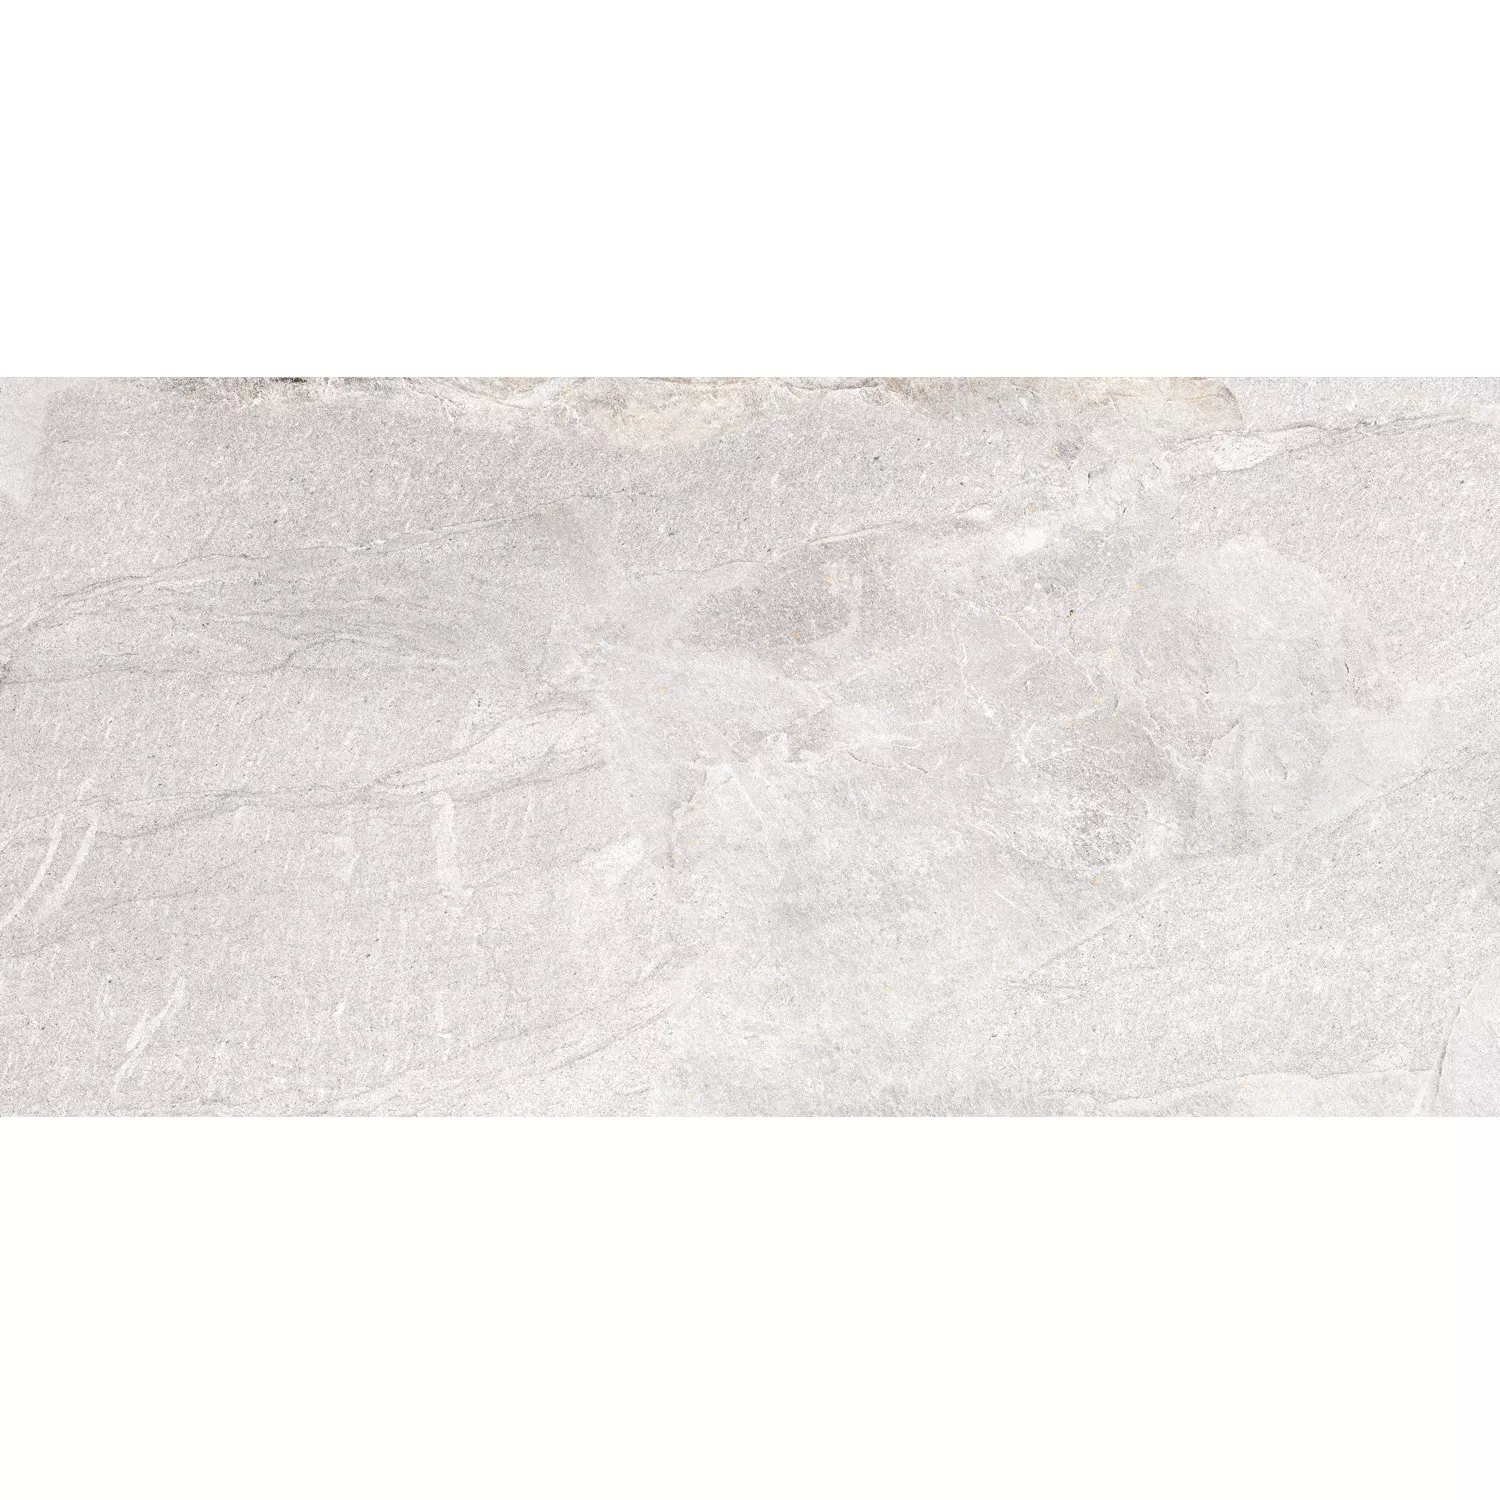 Sample Floor Tiles Homeland Natural Stone Optic R10 Bone 30x60cm